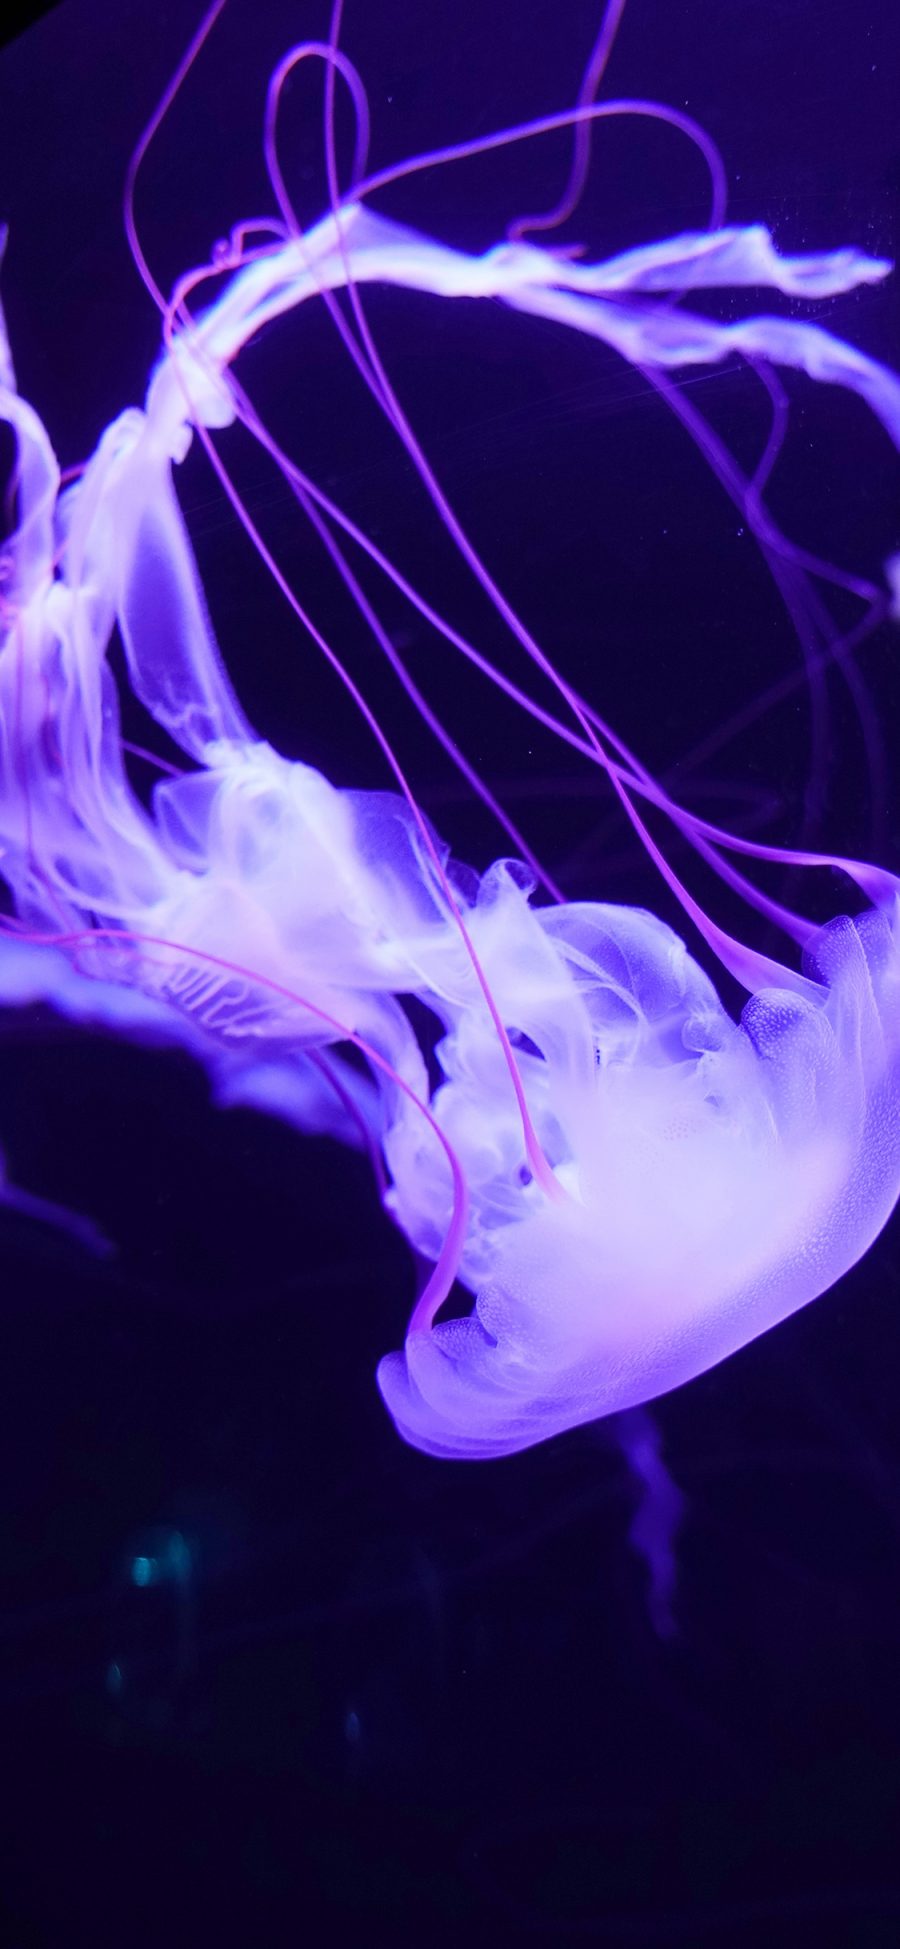 [2436×1125]水母  浮游 海洋生物 触手 苹果手机壁纸图片